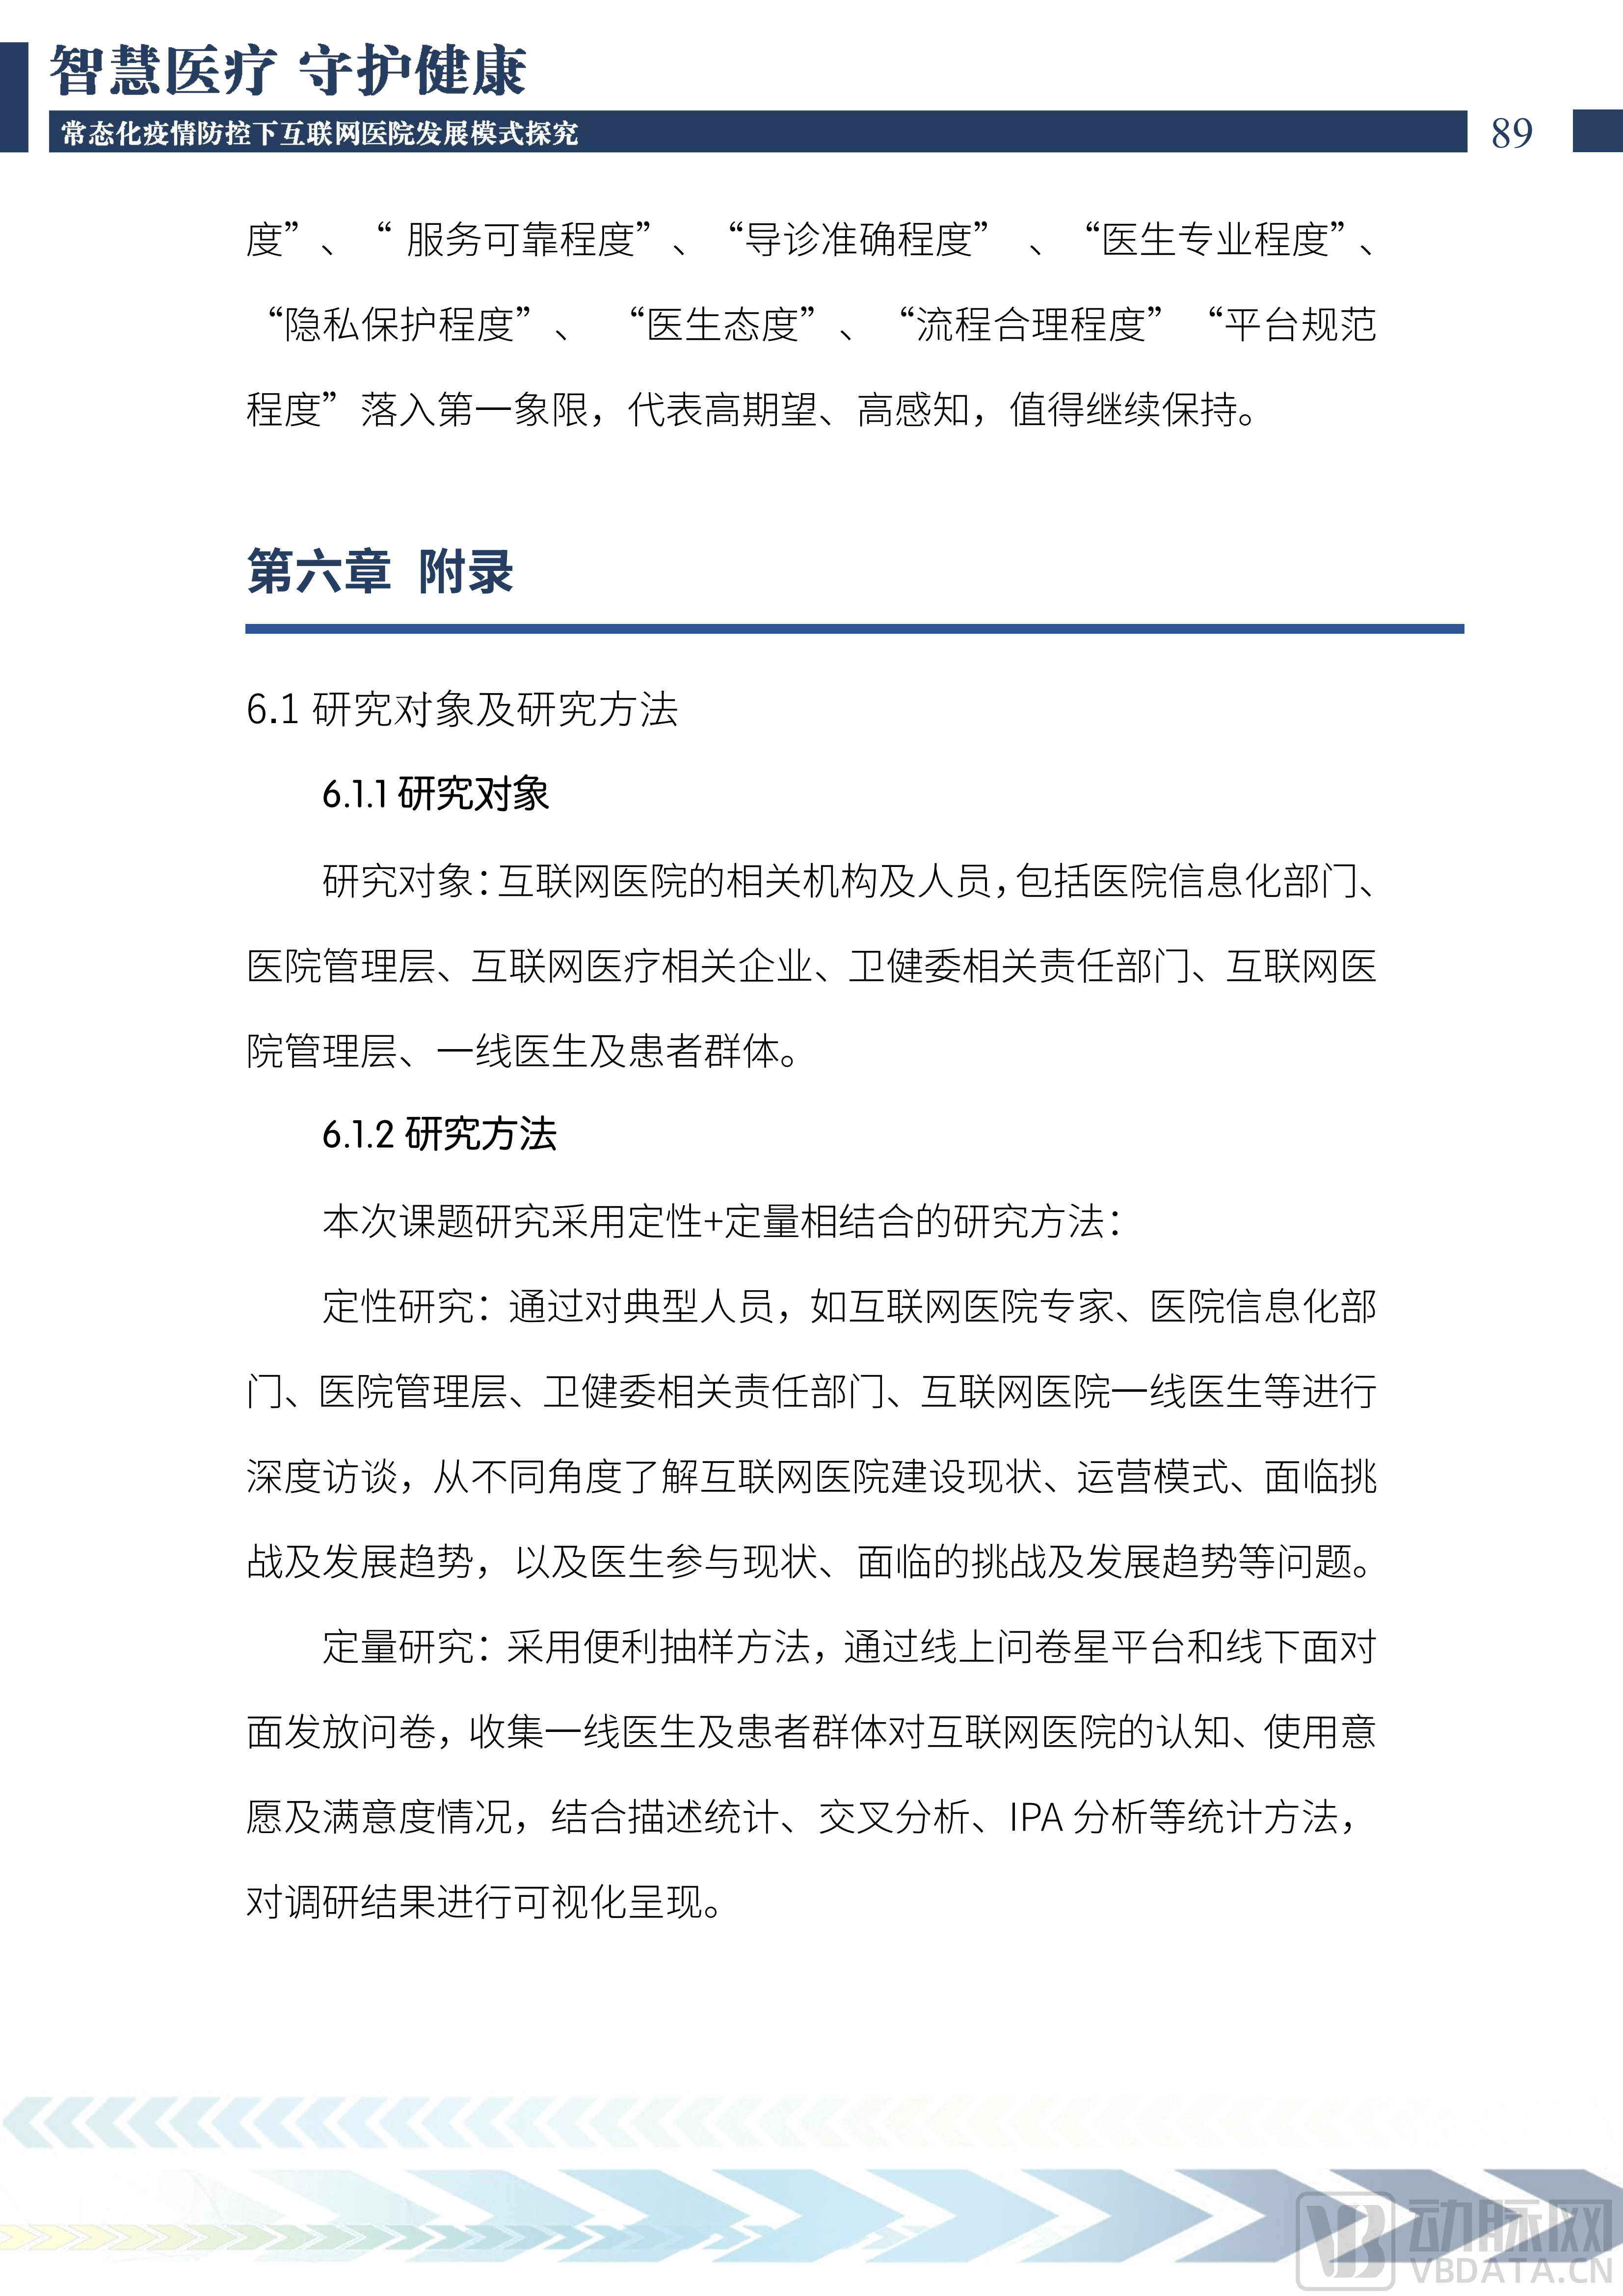 2022中国互联网医院发展调研报告(1)_90.png